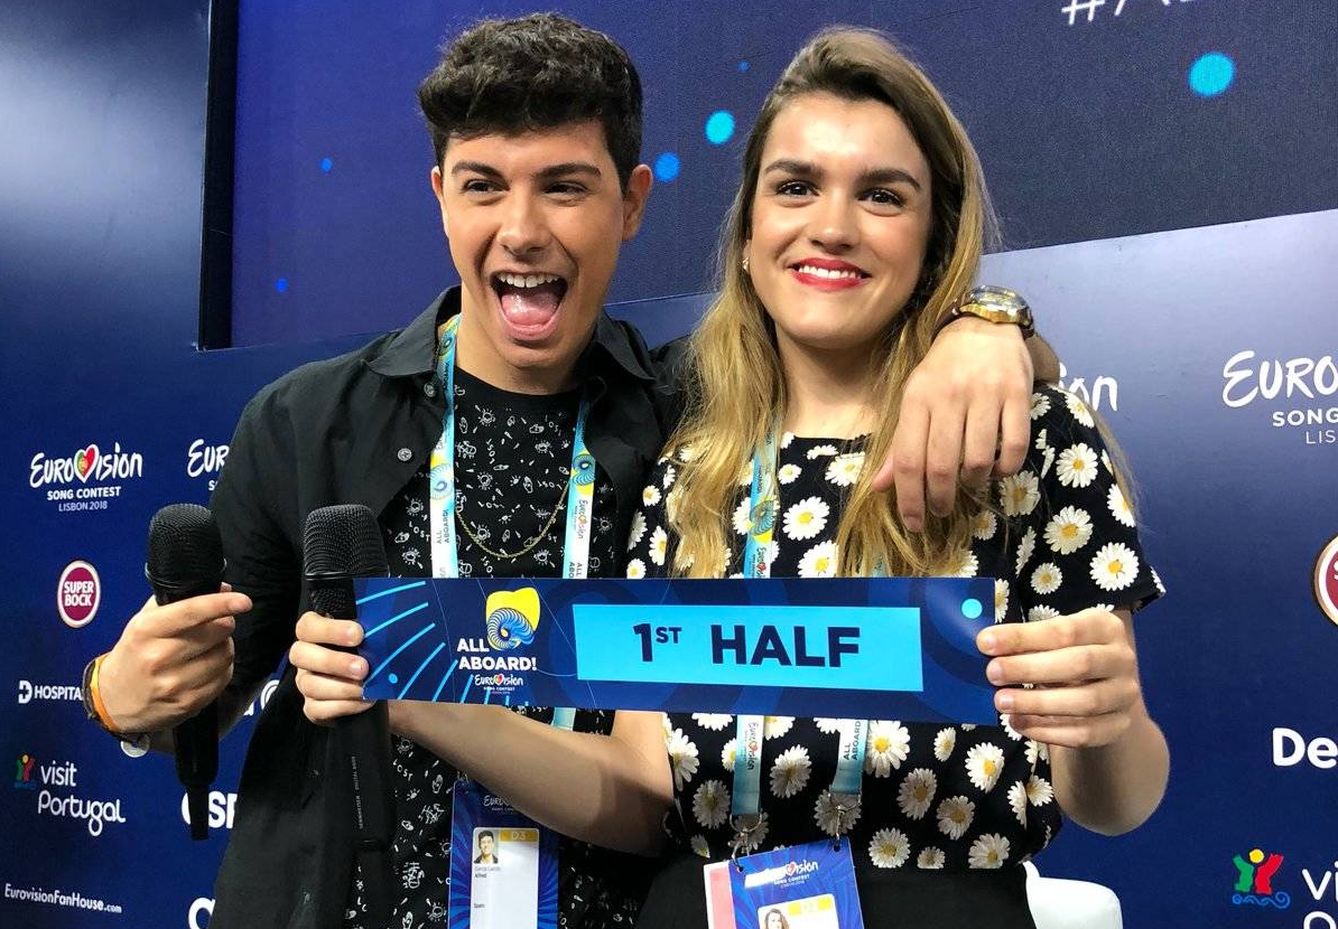 Alfred y Amaia actuarán en la primera mitad del Festival de Eurovisión 2018. (Eurovision.tv)